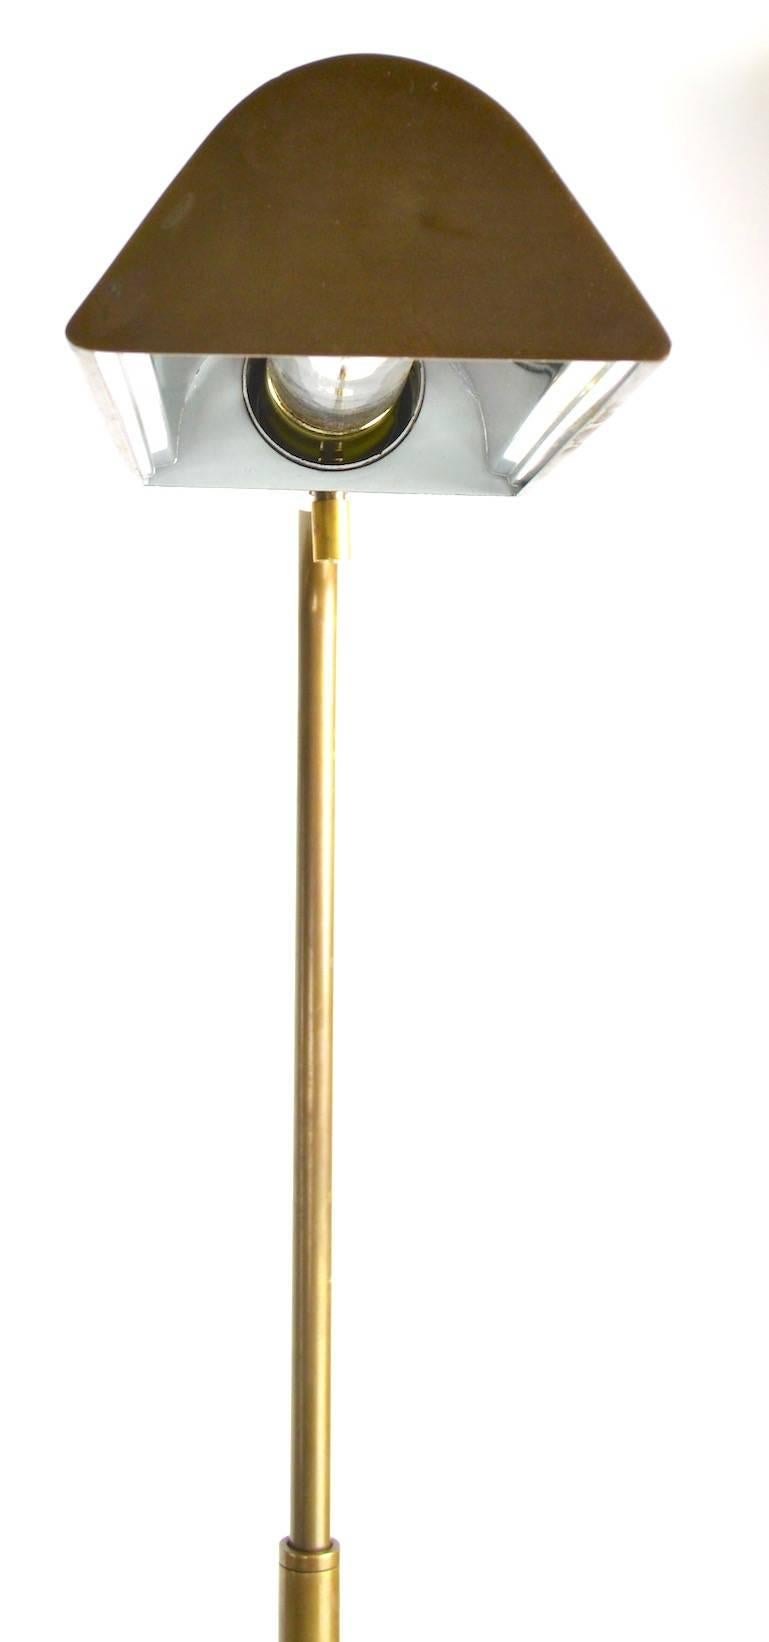 Adjustable Brass Floor Lamp after Hartman 2